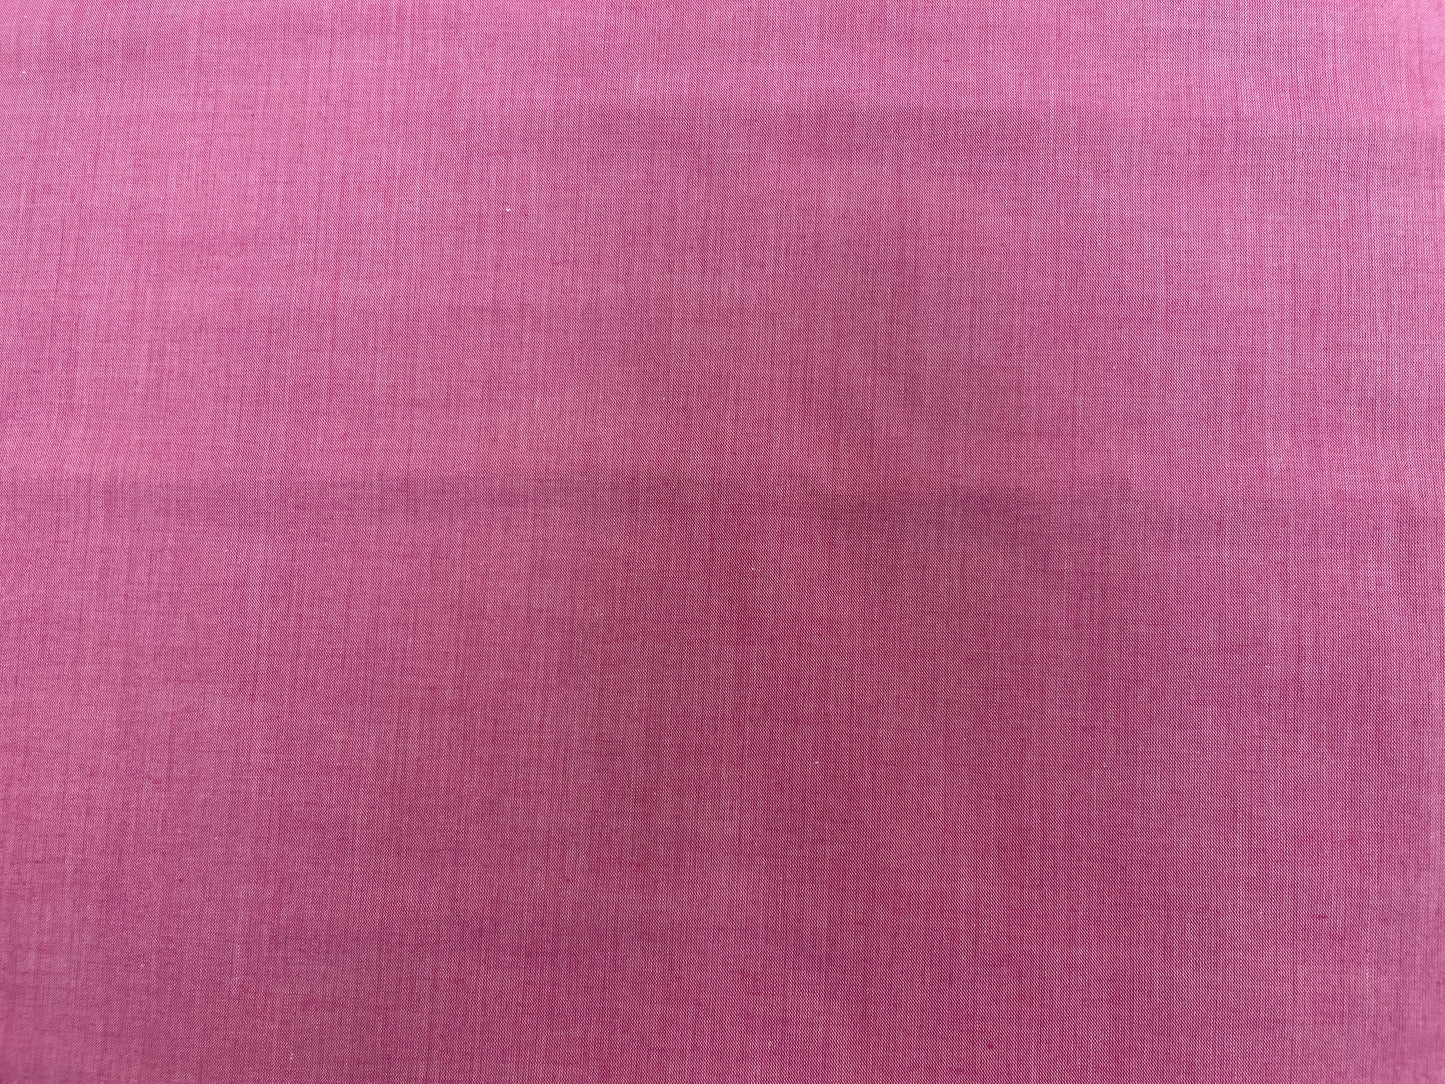 Rose Pink Cotton Shirting